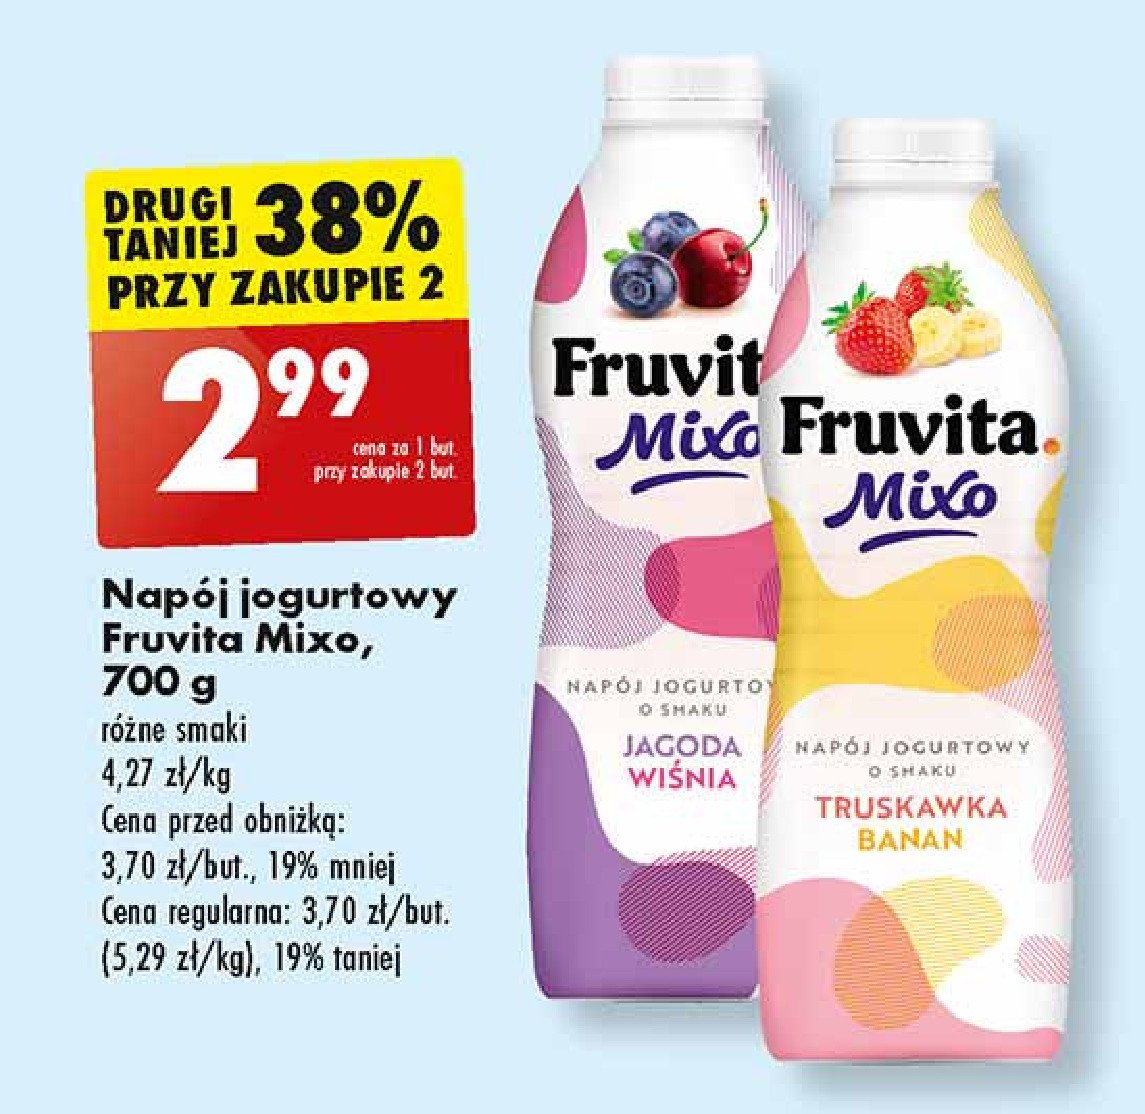 Napój jogurtowy truskawka banan Fruvita mixo promocja